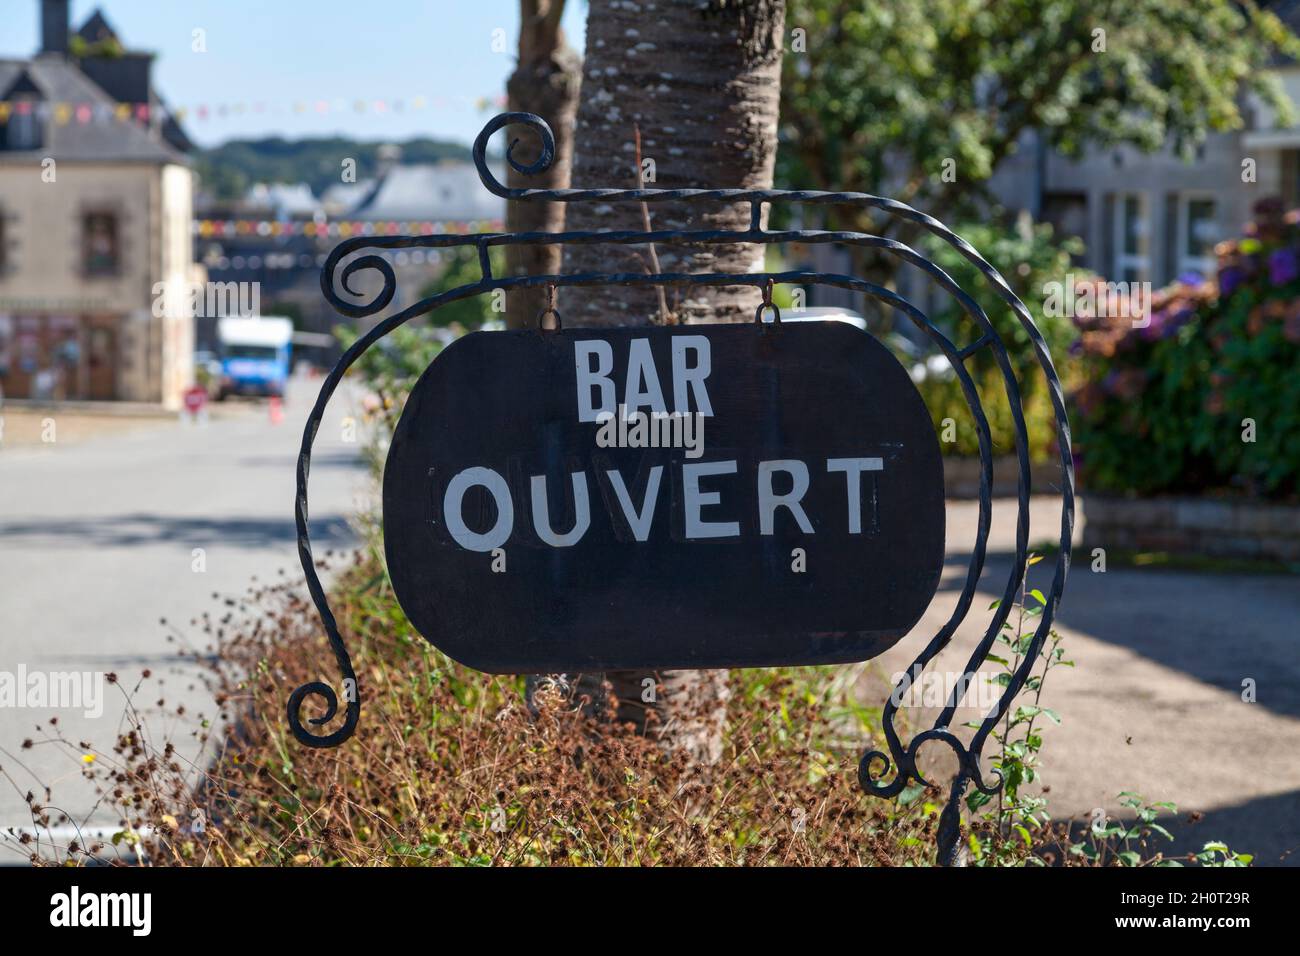 Primer plano en un cartel al aire libre que dice en francés 'Bar ouvert', que  significa en inglés 'Bar open' Fotografía de stock - Alamy